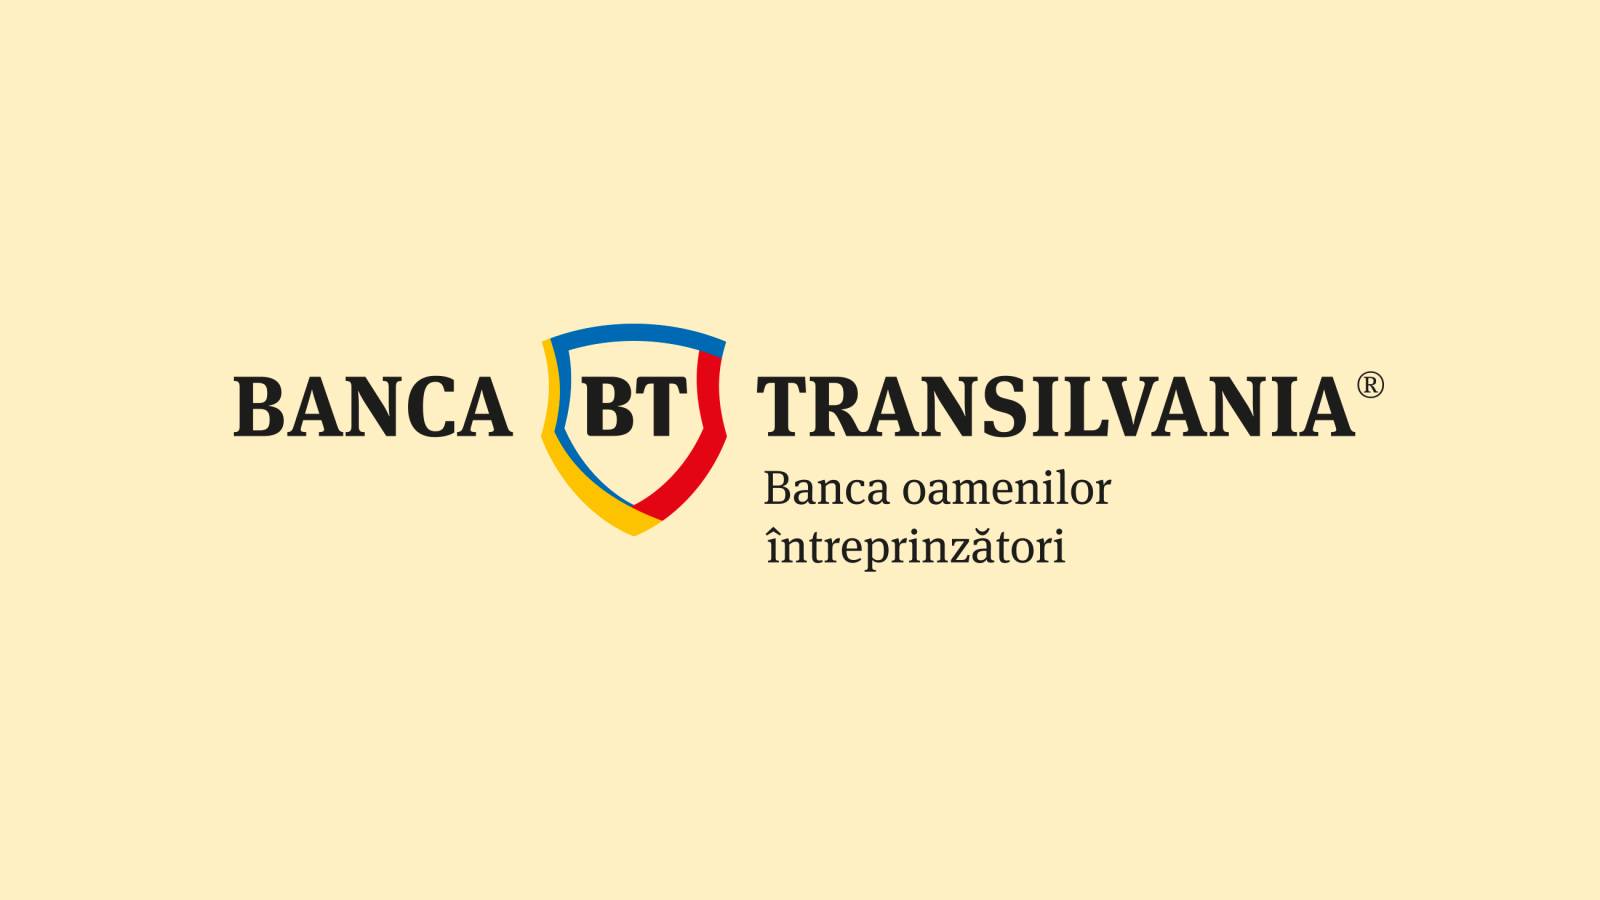 BANCA Transilvania ULTIMO MOMENTO Annuncio IMPORTANTE Cambiamenti clientela rumena